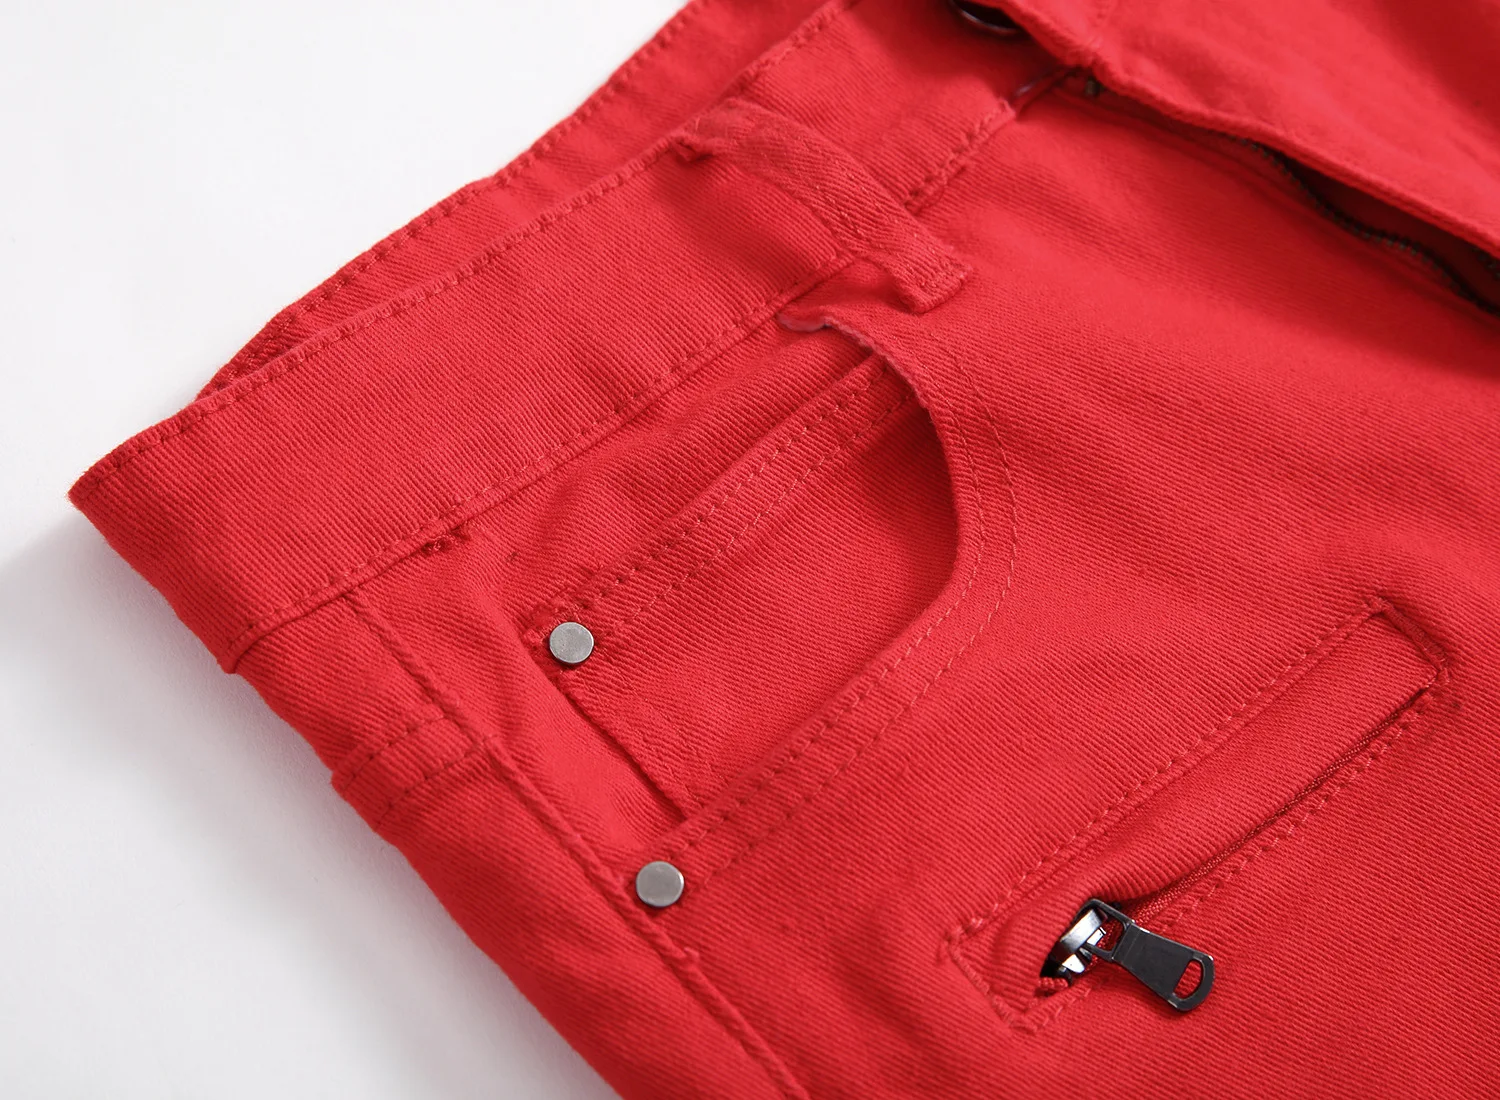 HMILY летние мужские джоггеры рваные джинсовые шорты отверстие поп уличная мужские джинсы тонкие модные брендовые мужские джинсы Большие размеры